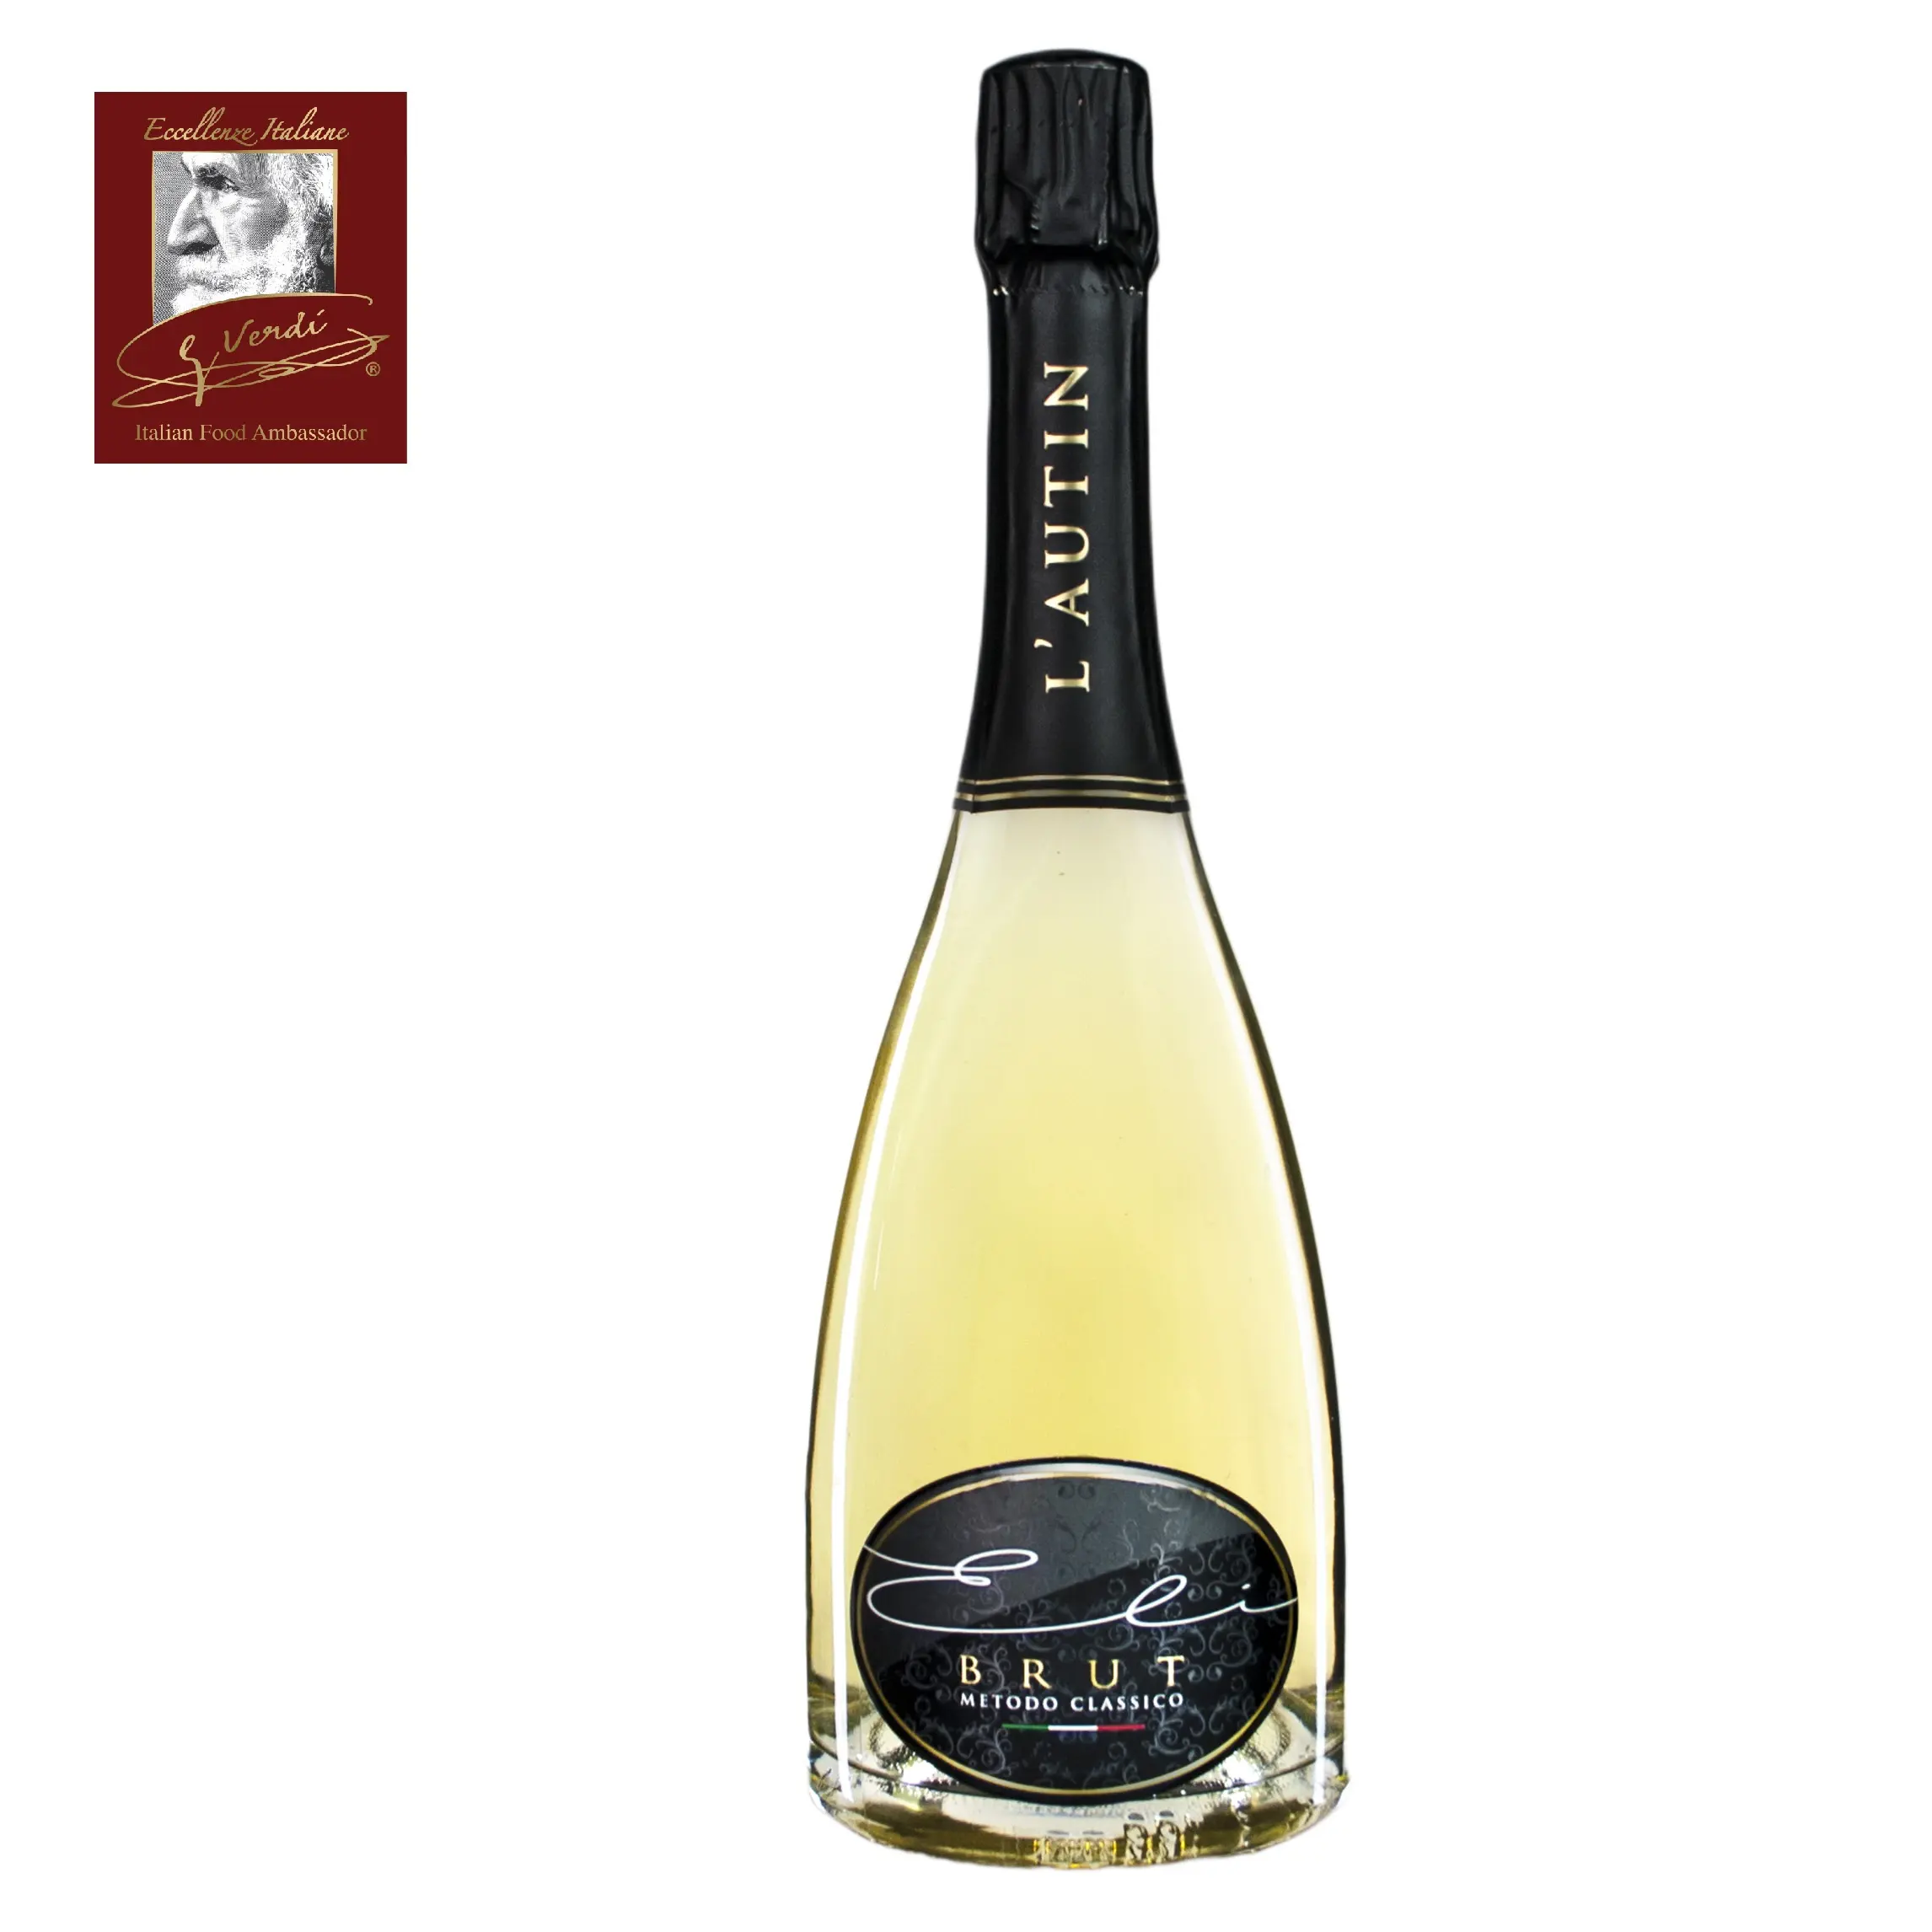 750 ml Italienischer Wein Klassische Methode Eli Brut Giuseppe Verdi Auswahl Weißwein Made in Italy